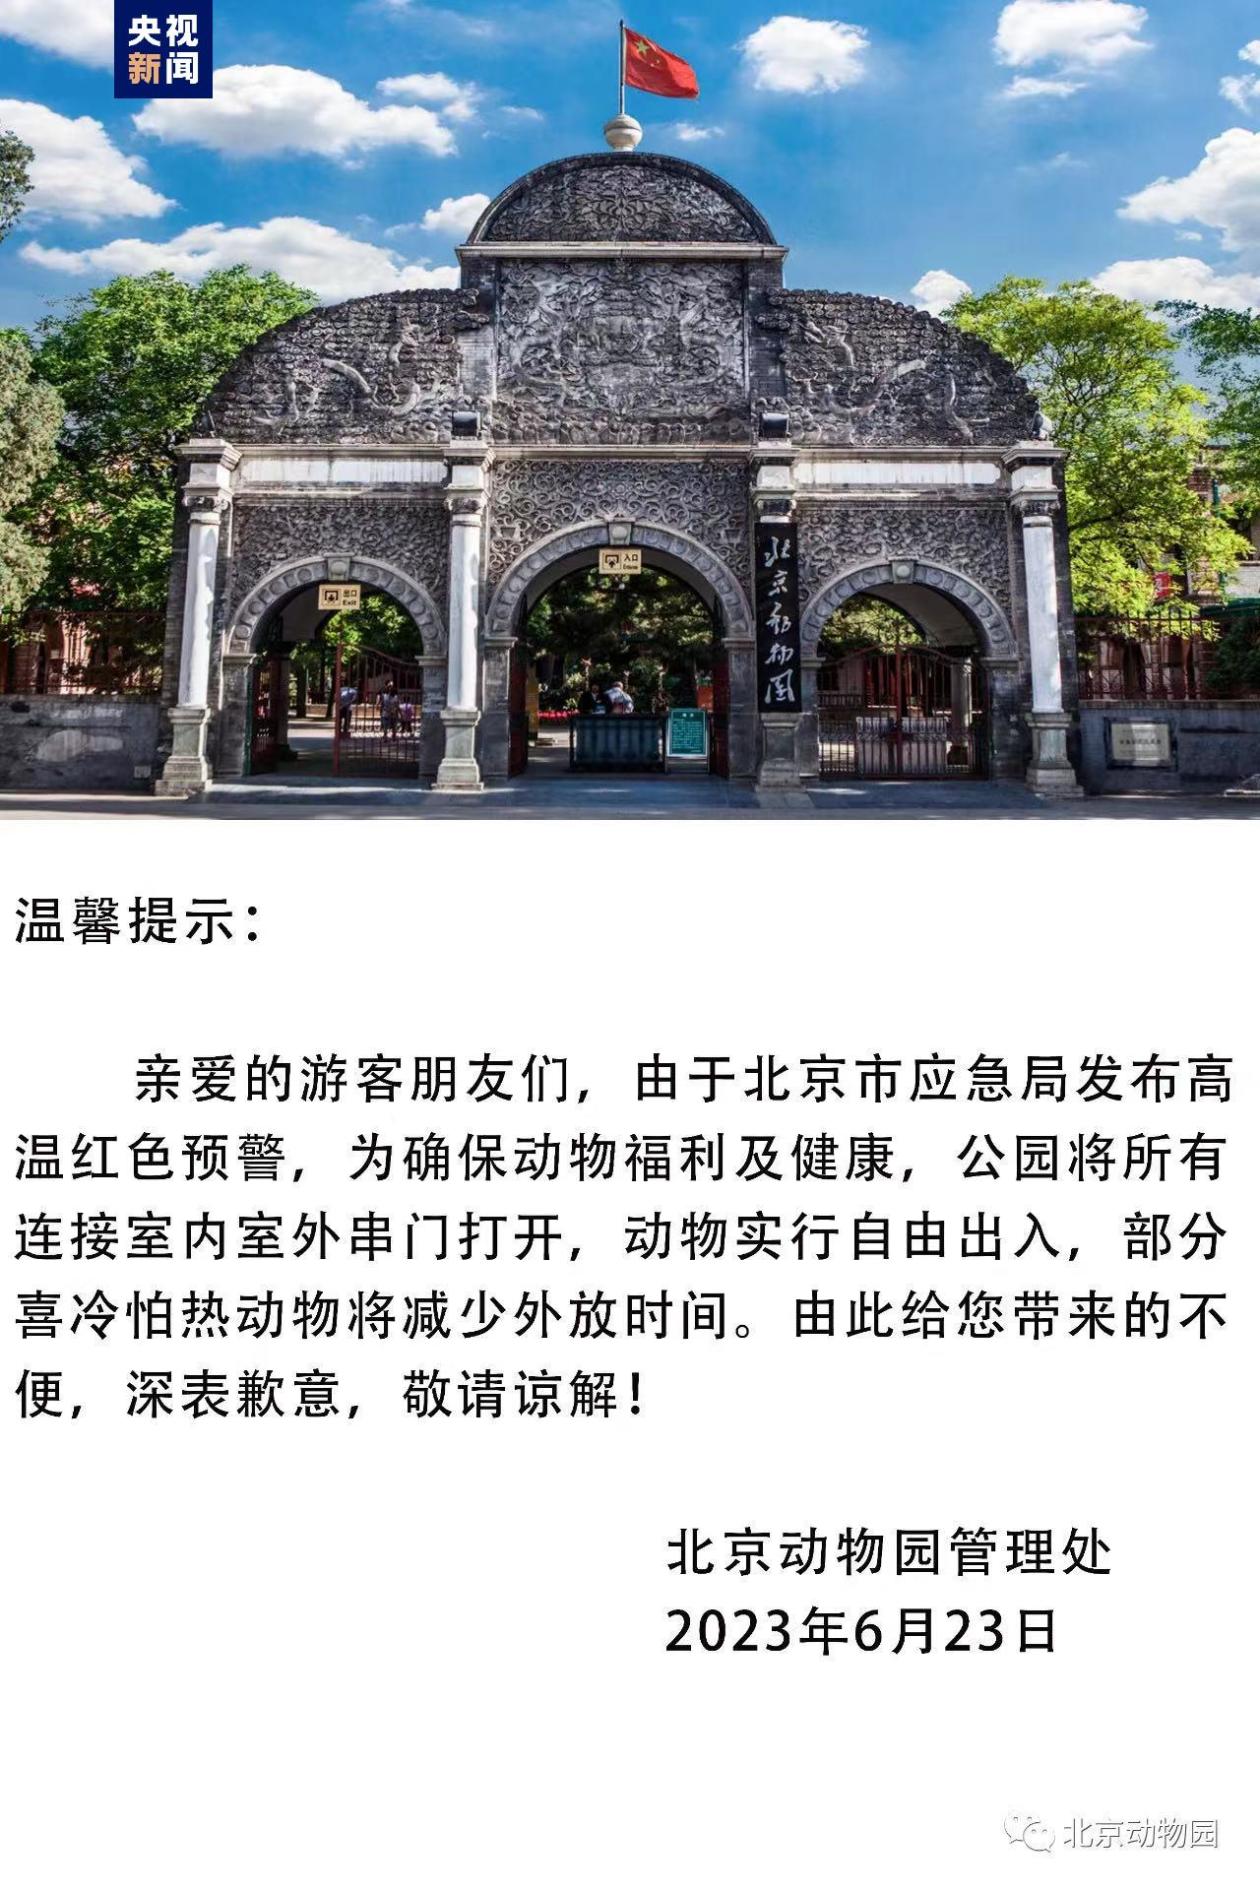 北京动物园发布提示 部分动物将减少外放时间